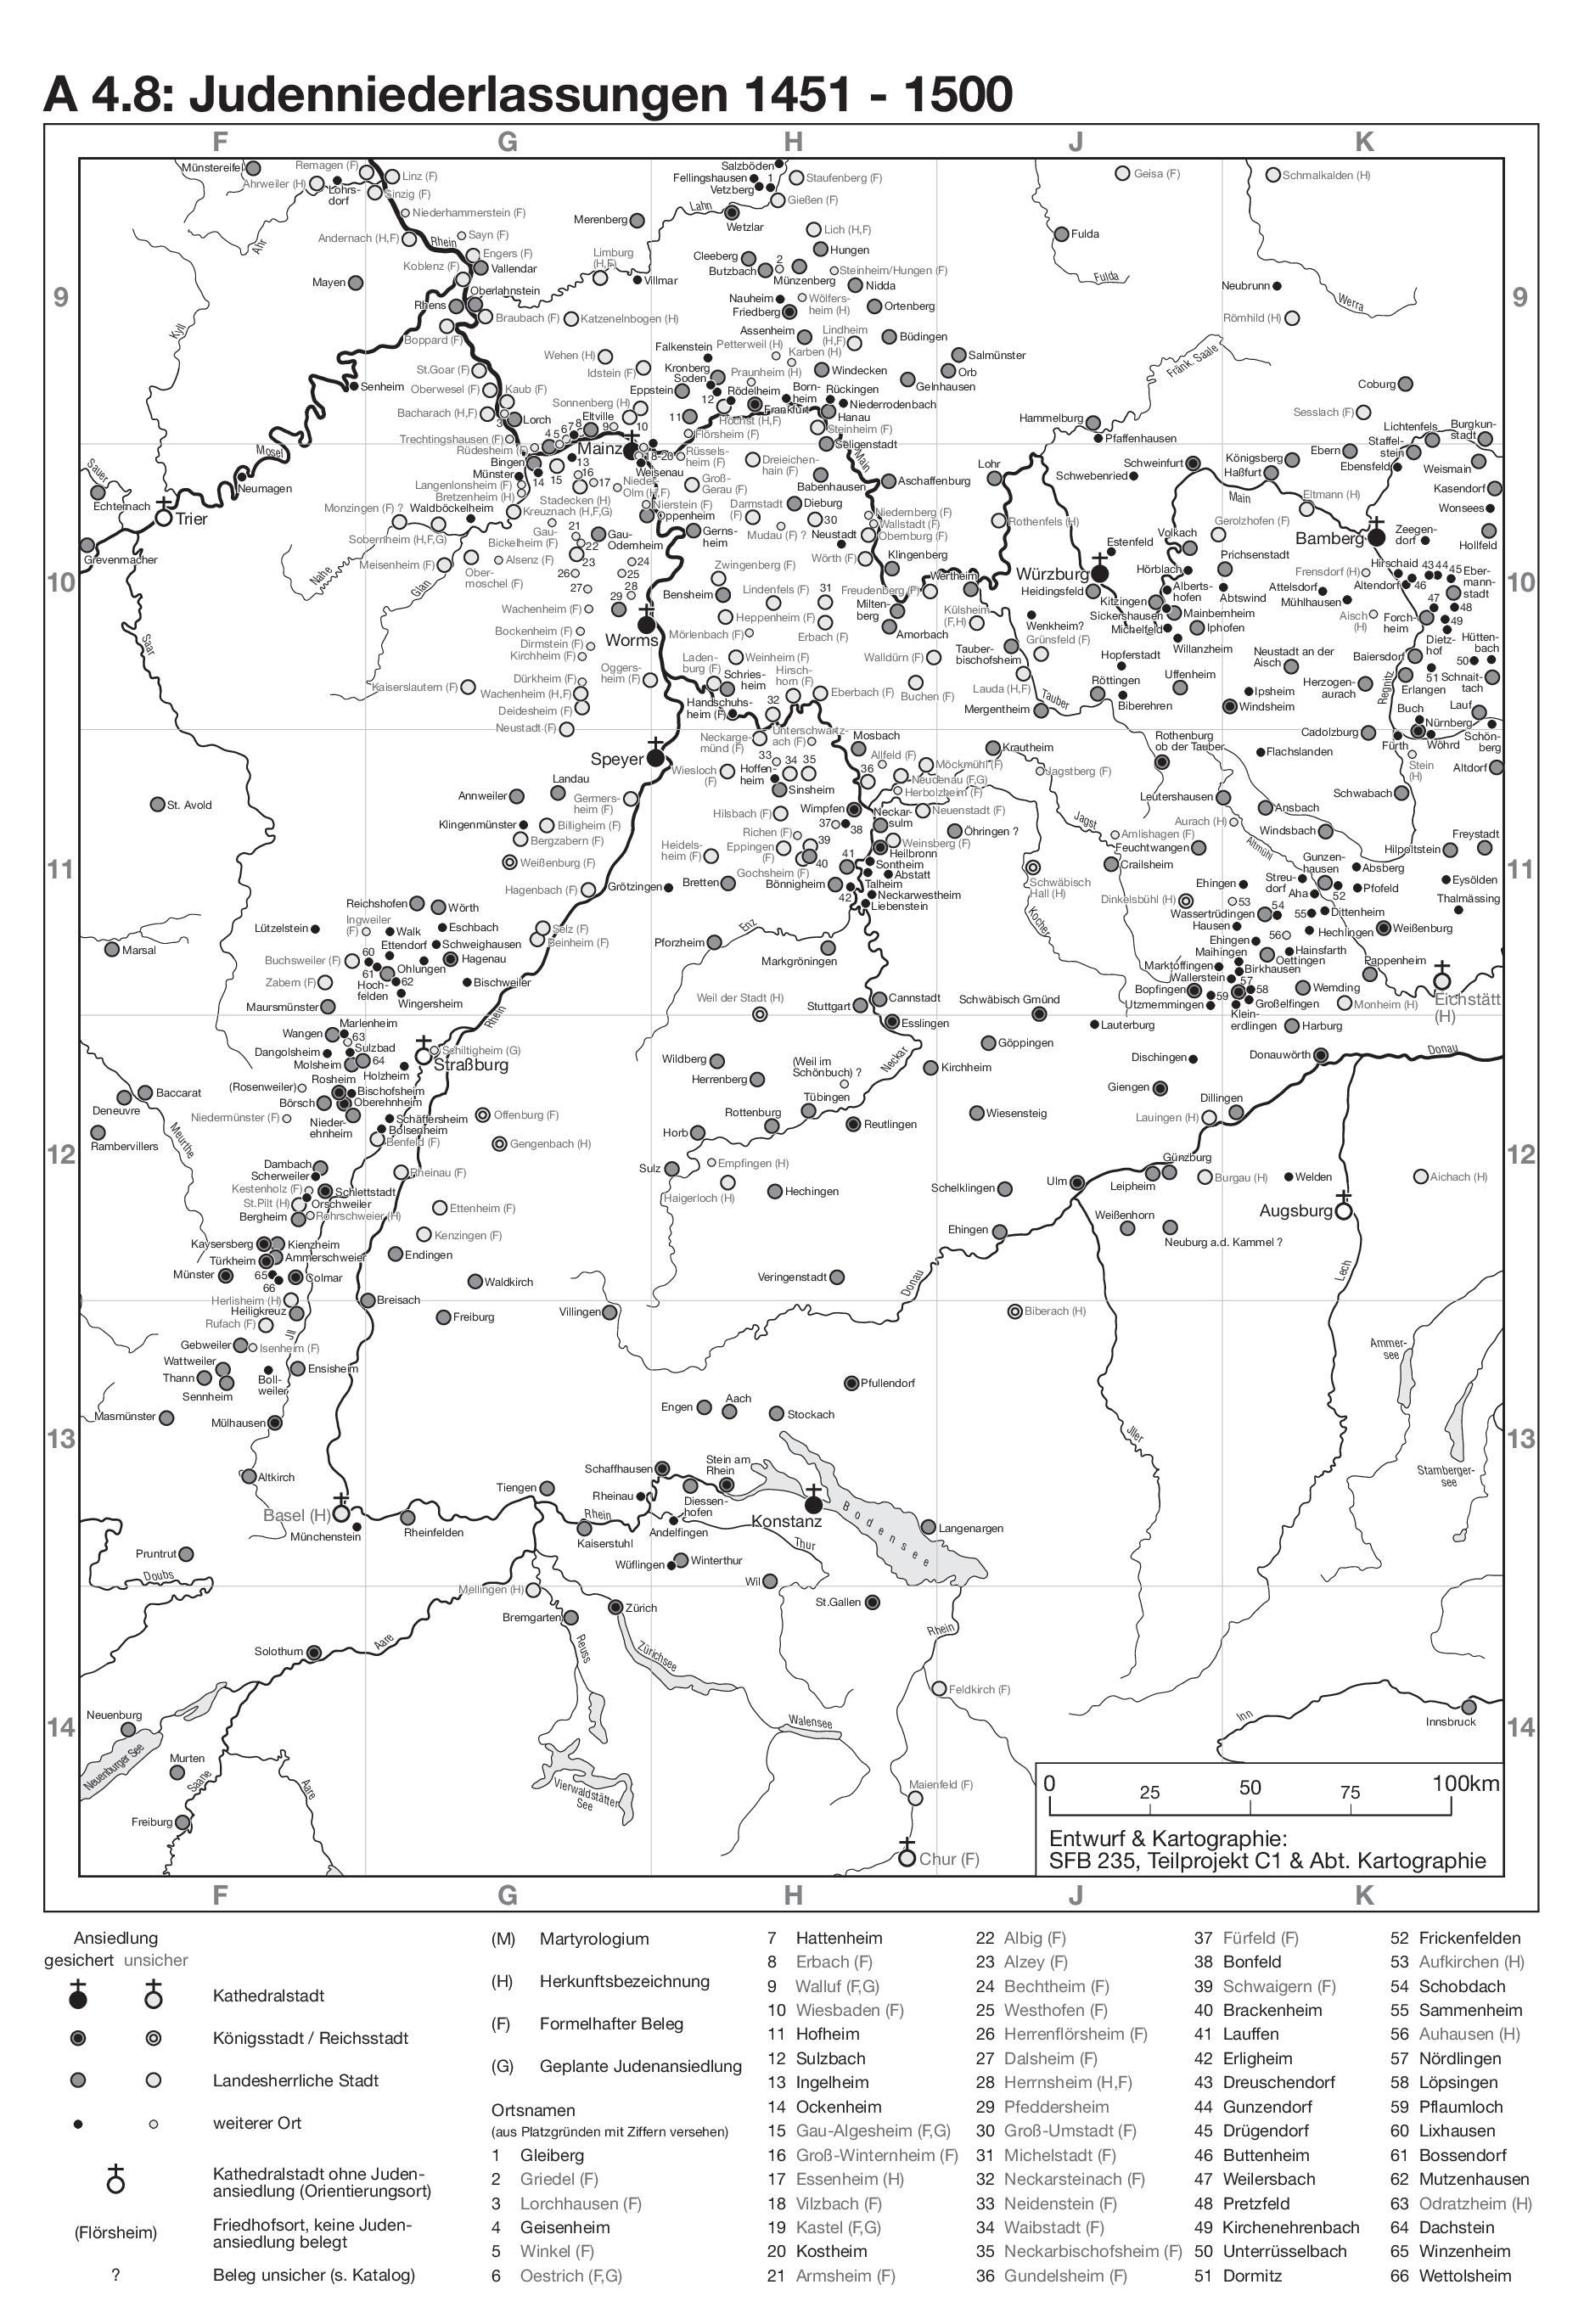 Karte A 4.8 Judenniederlassungen von 1451 bis 1500